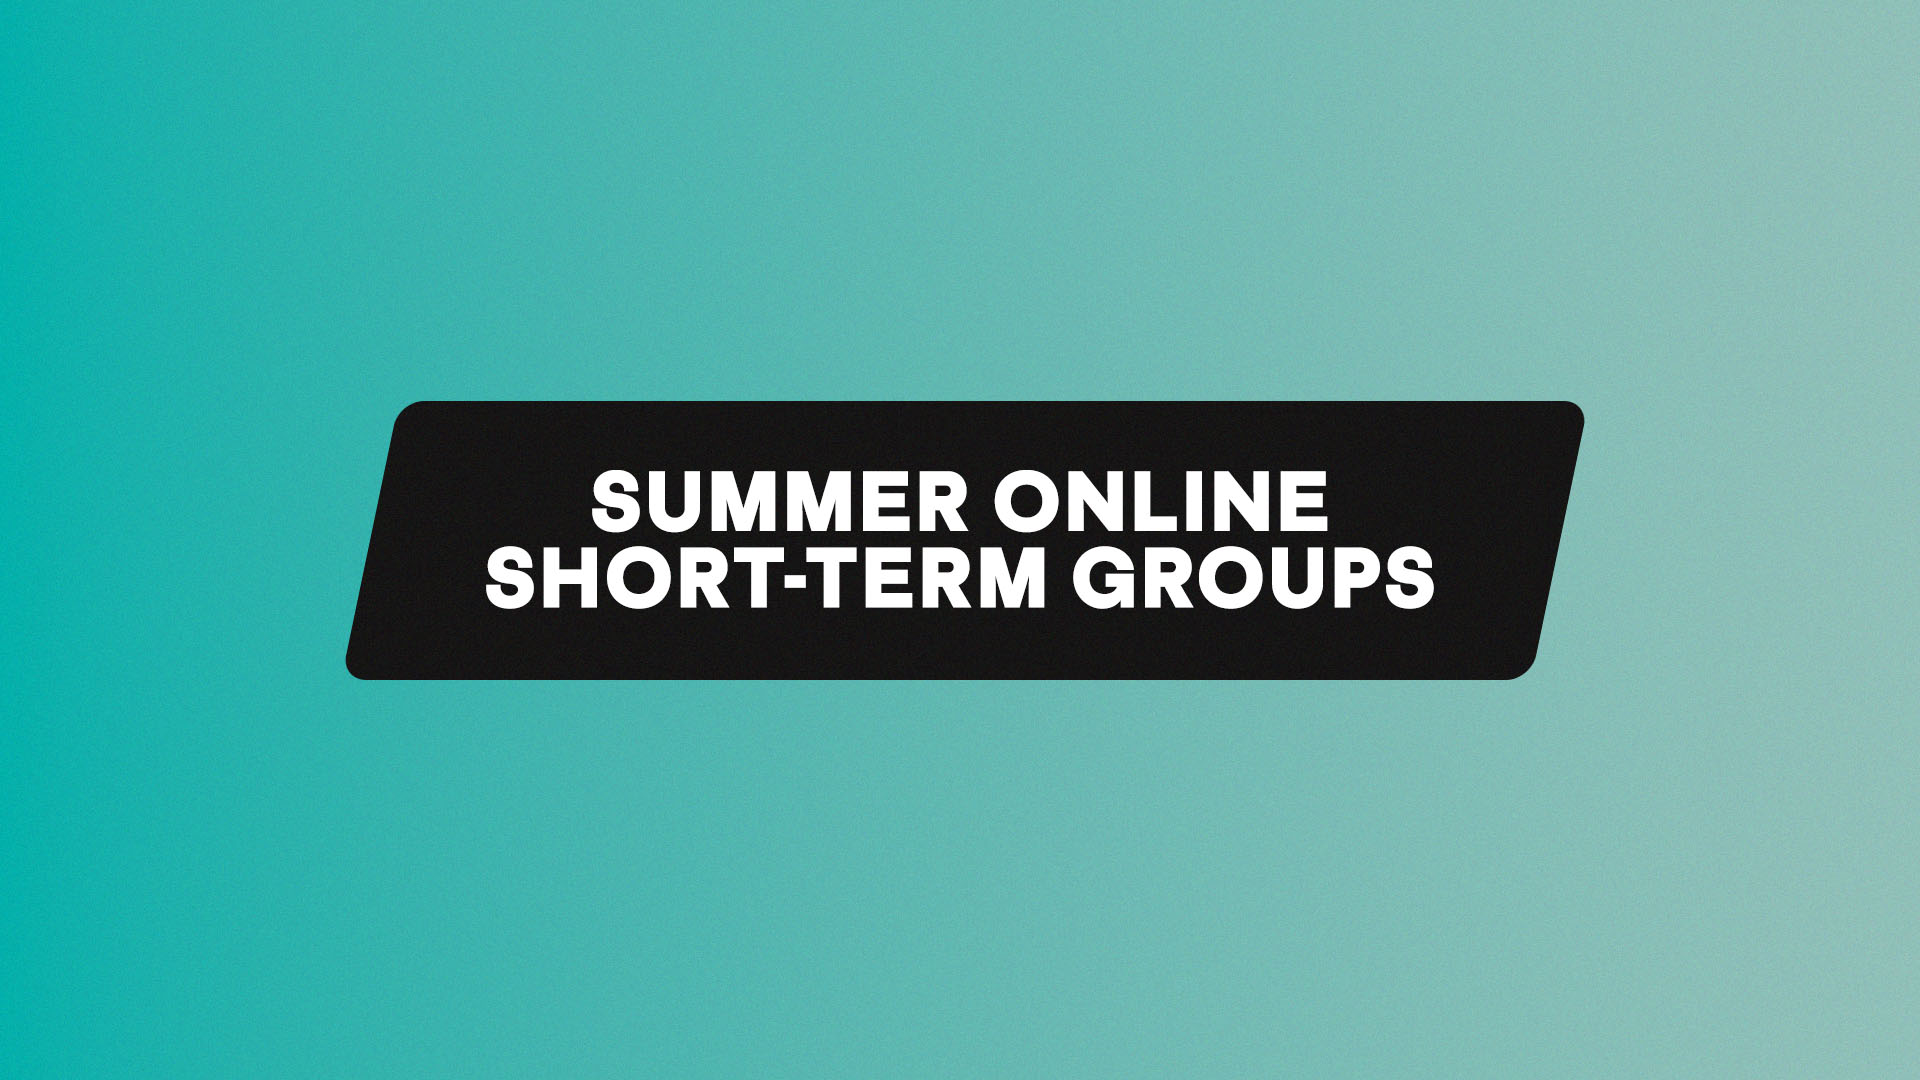 Summer Short-Term Groups - Online